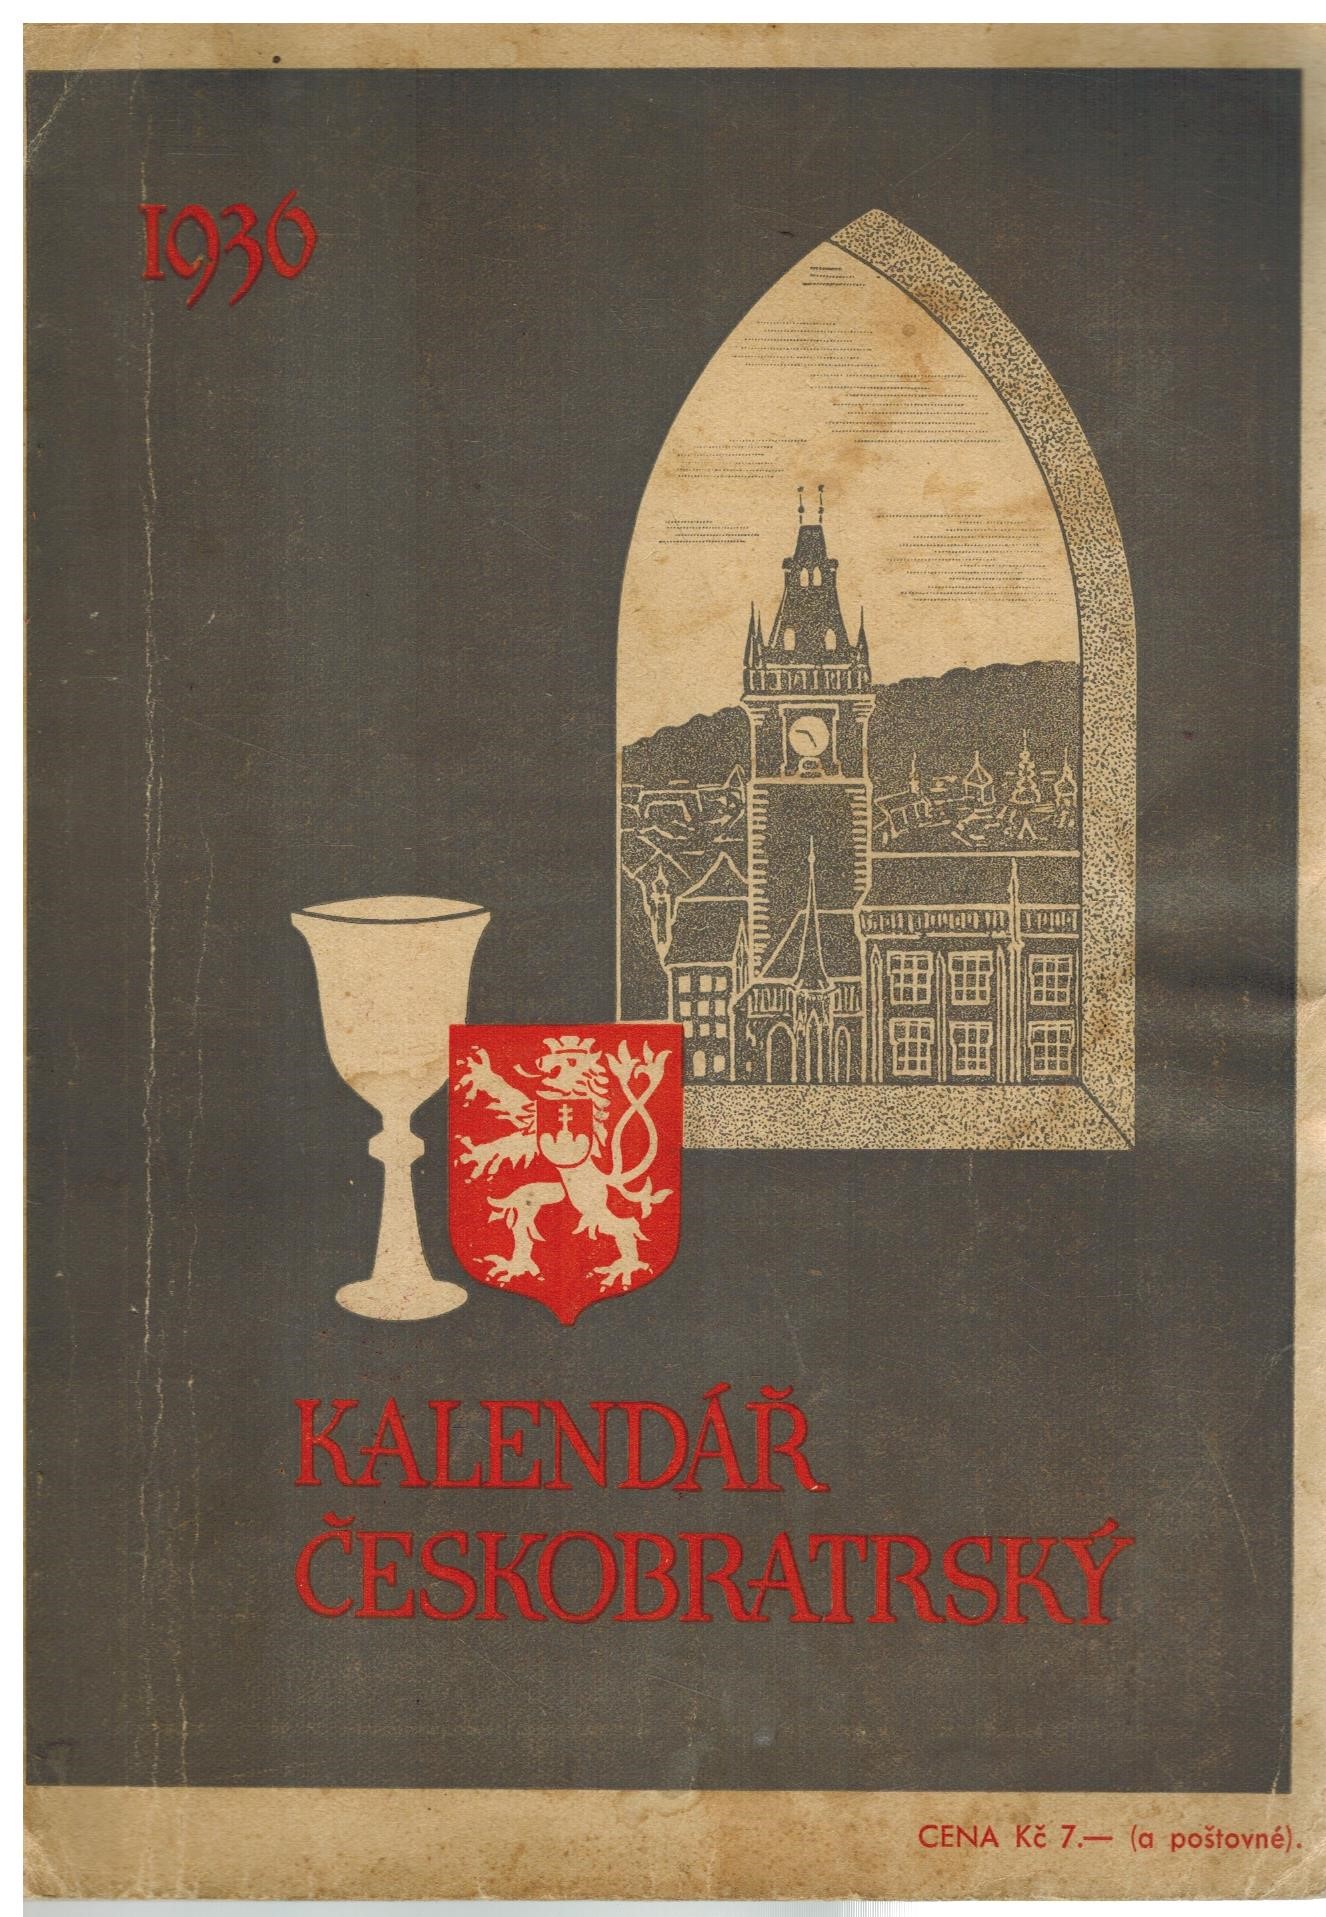 KALENDÁŘ ČESKOBRATRSKÝ 1936